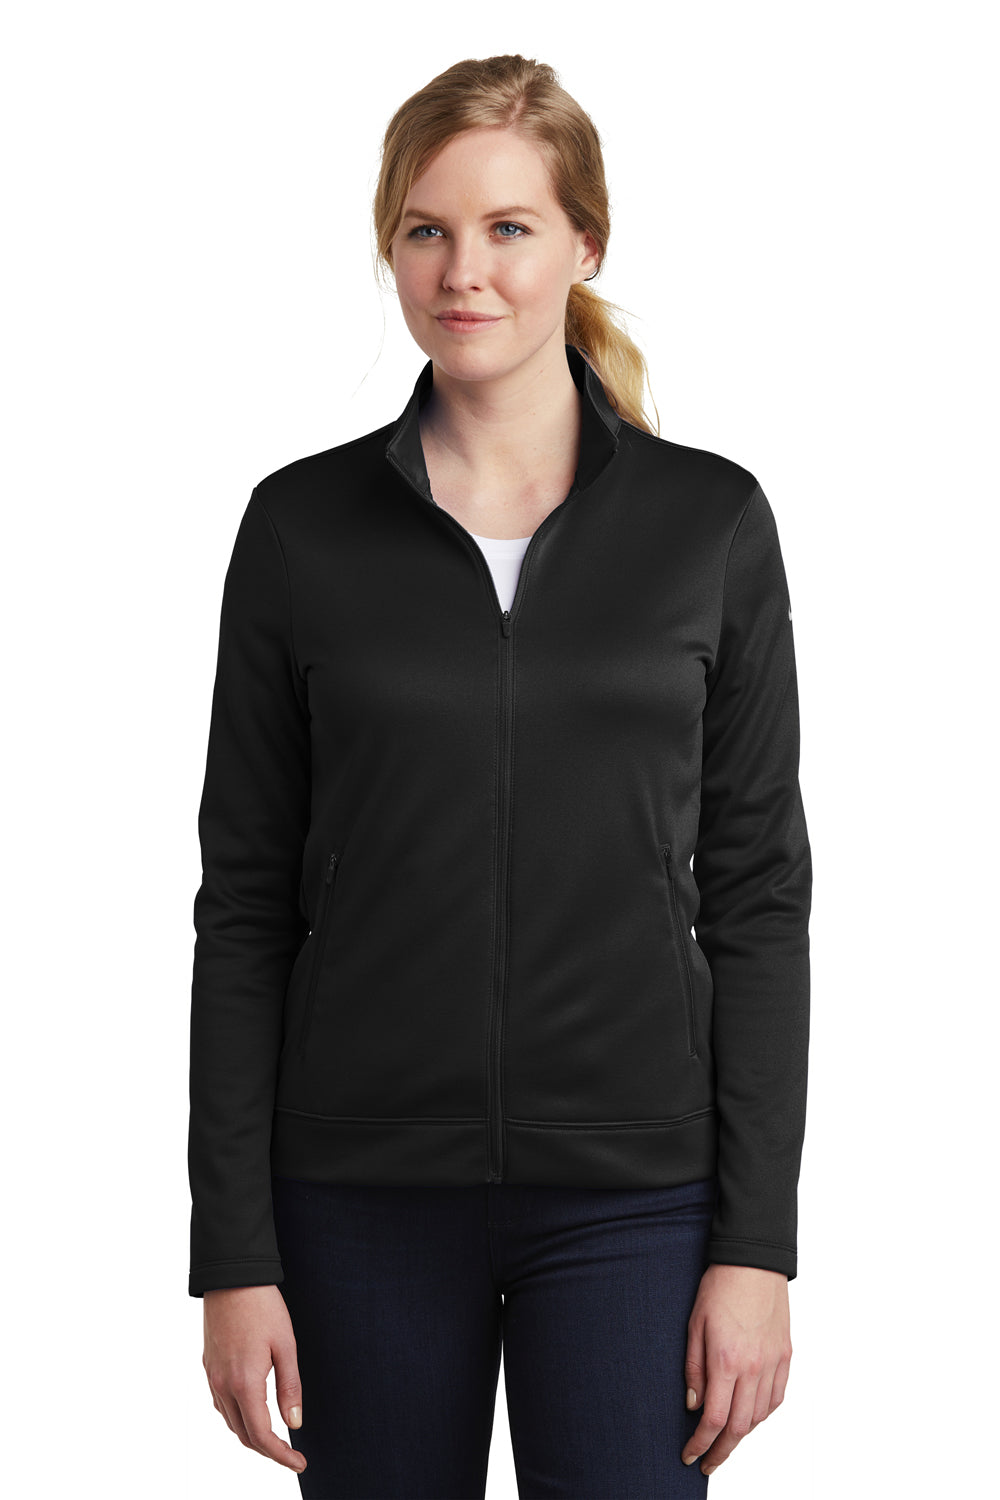 Nike NKAH6260 Womens Therma-Fit Moisture Wicking Fleece Full Zip Sweatshirt Black Model Front